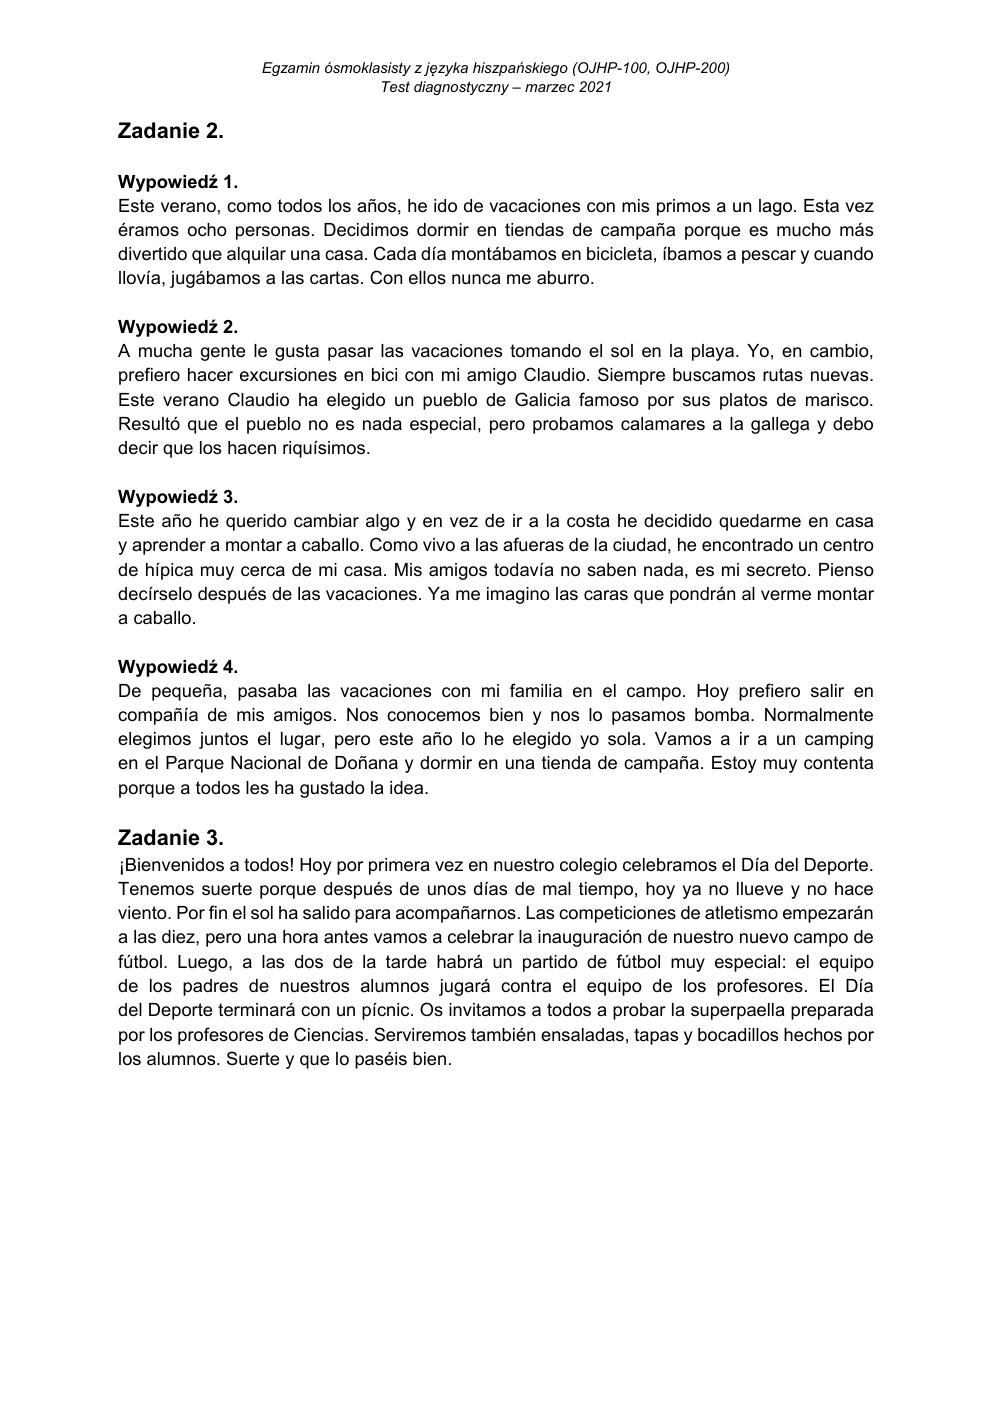 transkrypcja - hiszpański - egzamin ósmoklasisty 2021 próbny-2